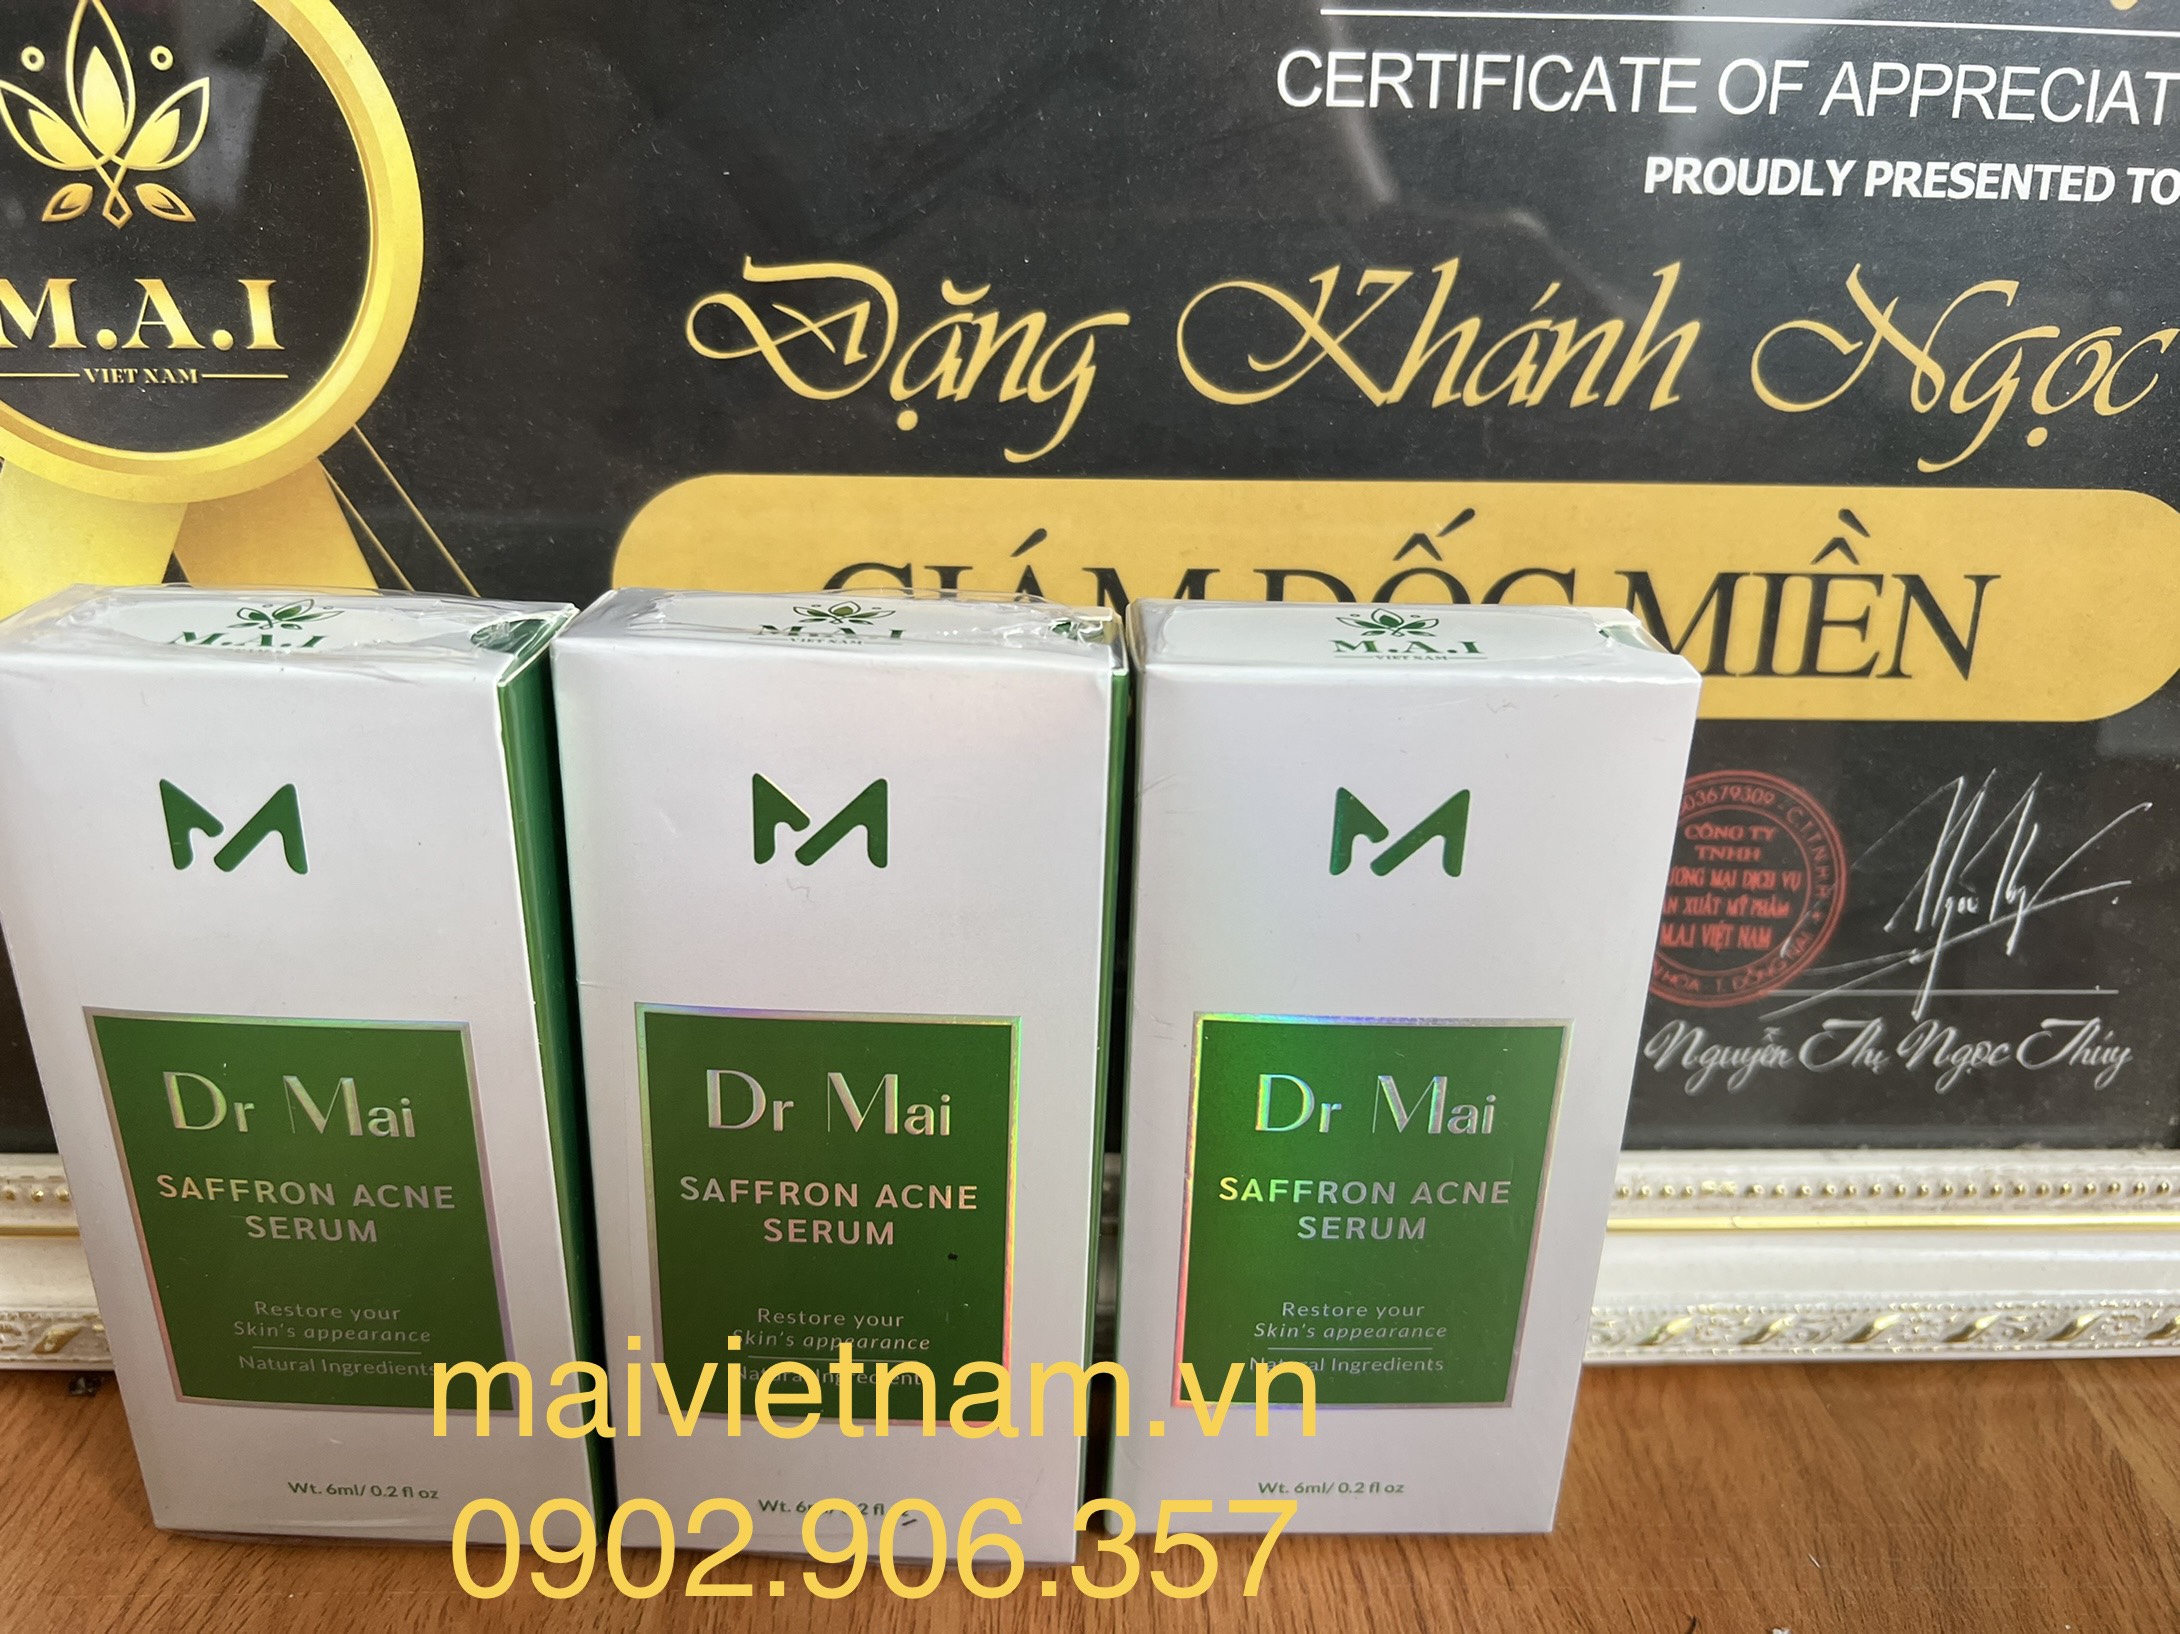 DR MAI TRỊ MỤN - Chính Hãng Công Ty M.A.I Việt Nam - Hotline Dược sĩ tư vấn 0902.906.357   